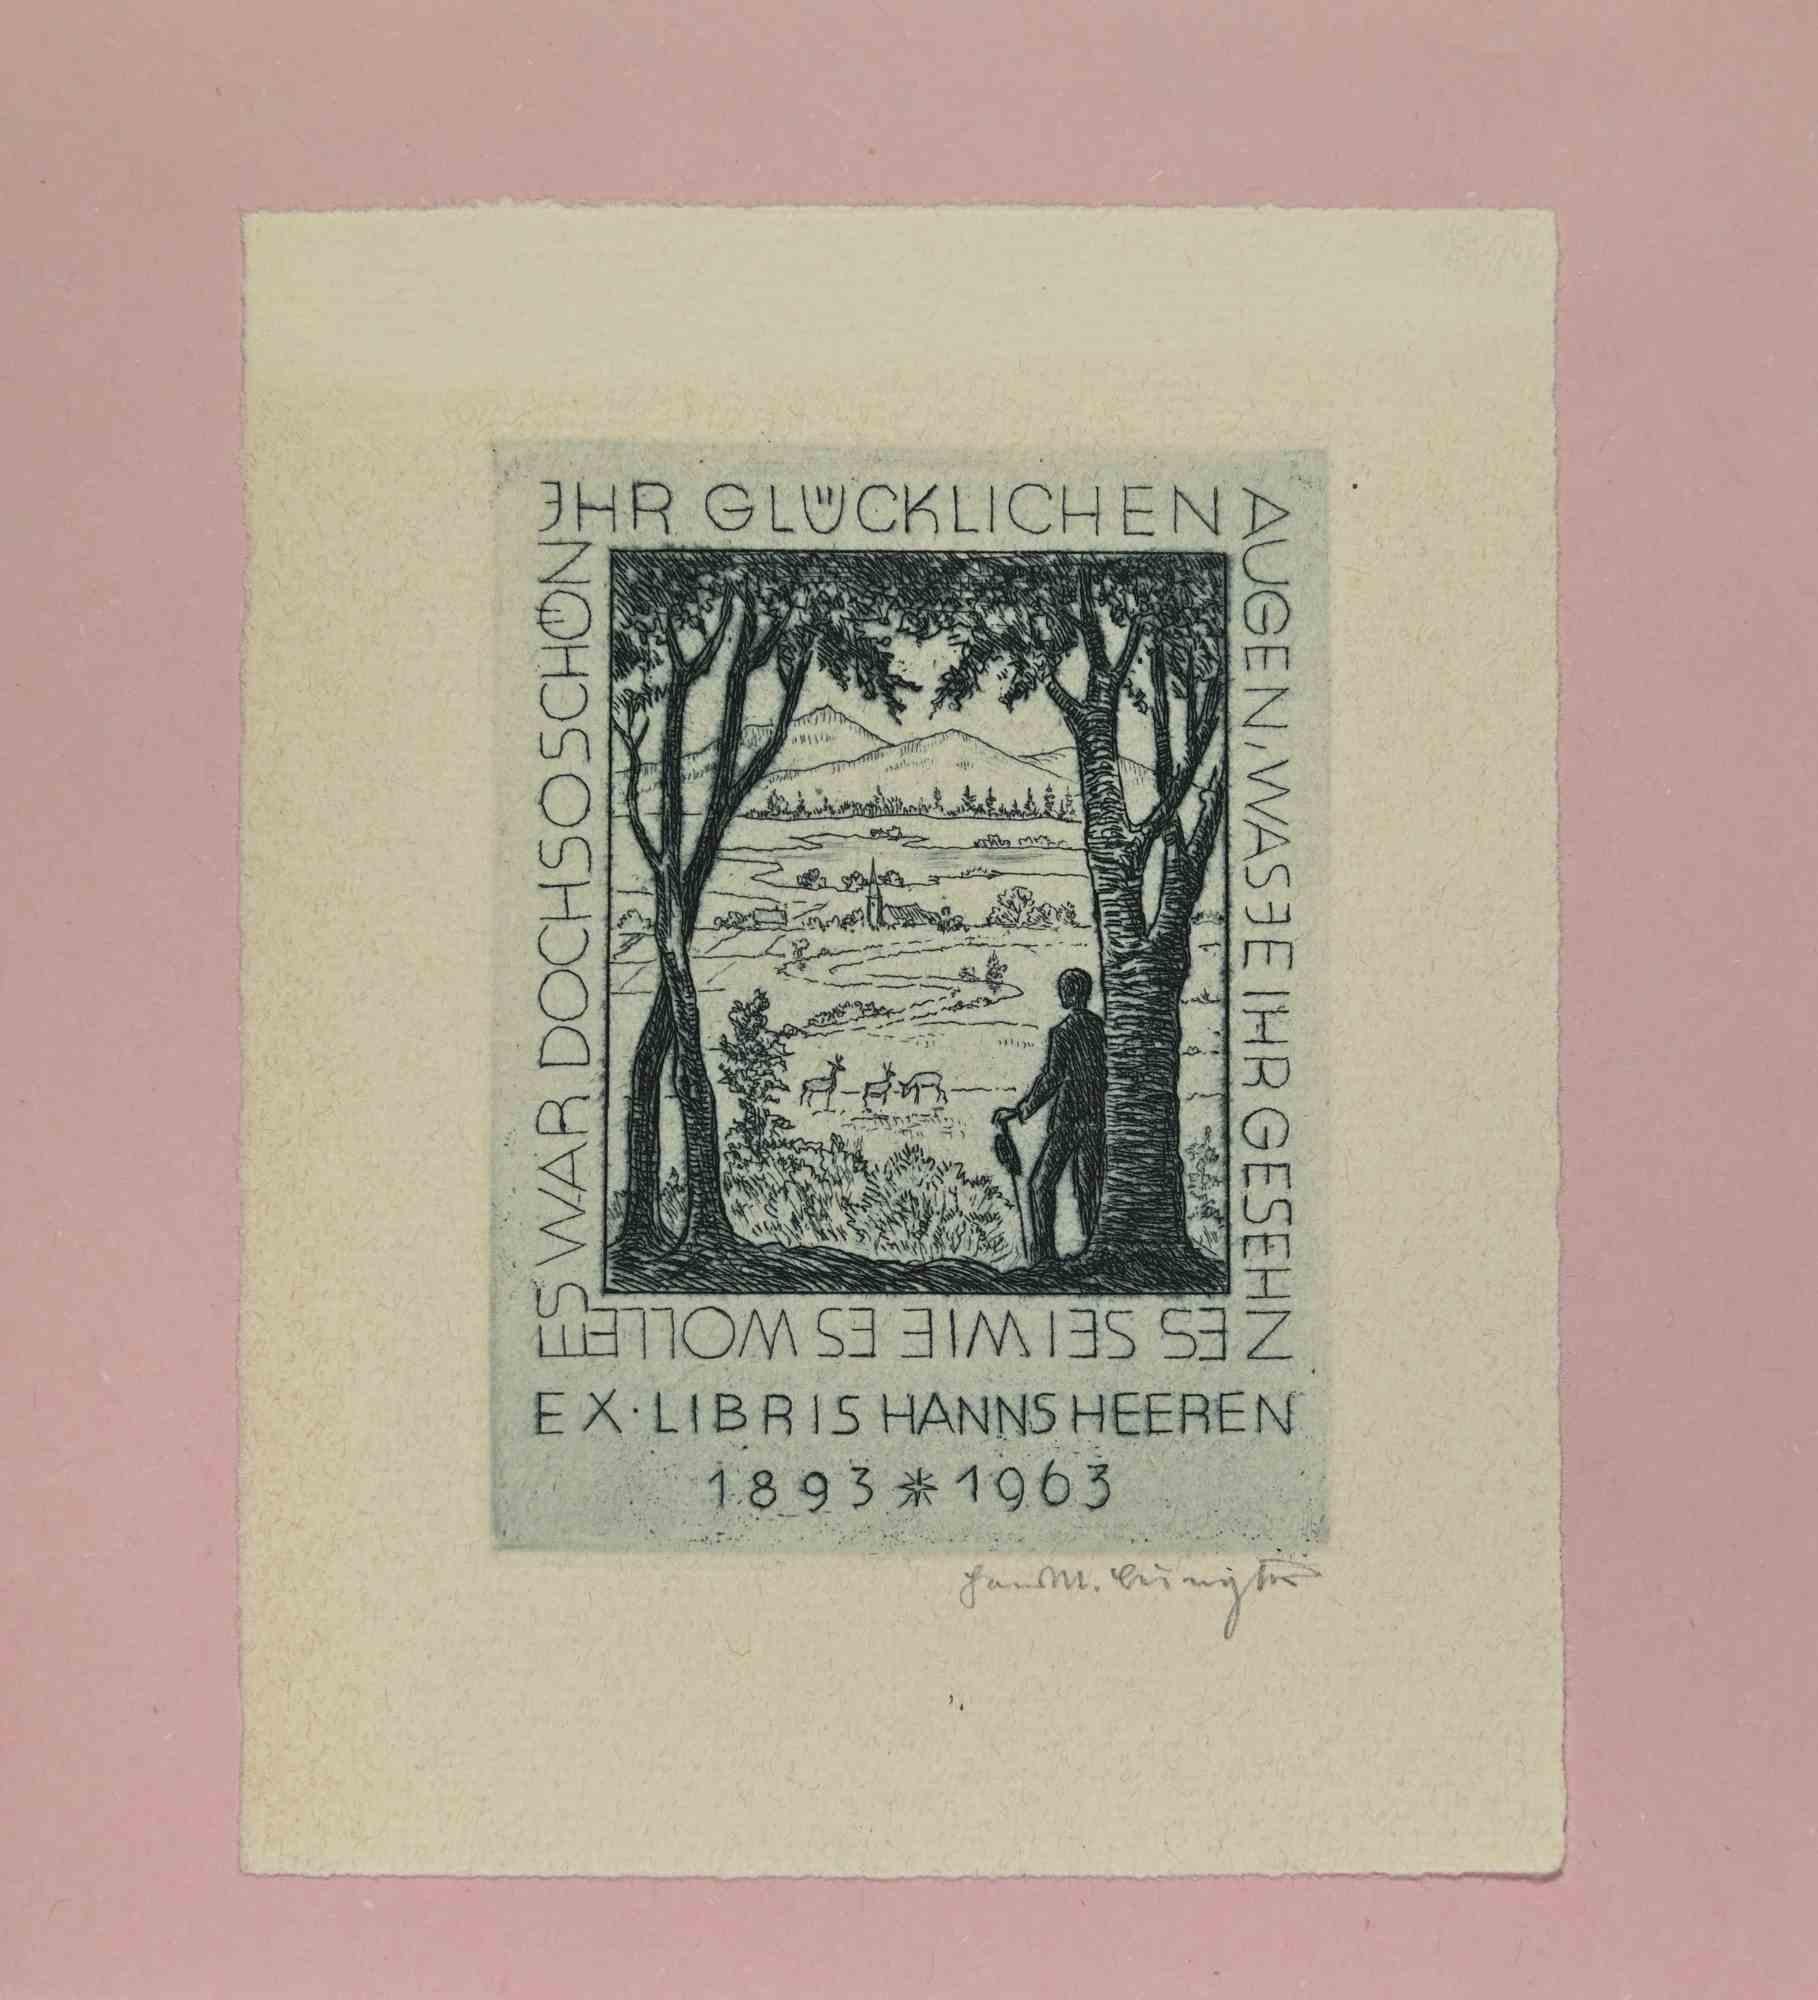 Ex Libris - Hanns Heeren 1893-1963 ist ein Kunstwerk aus dem frühen 20. Jahrhundert von Hans Michael Bungter aus Deutschland. 

Radierung auf Elfenbeinpapier.  Handsigniert in der rechten Ecke. Signiert auf der Platte auf der Rückseite. Das Werk ist